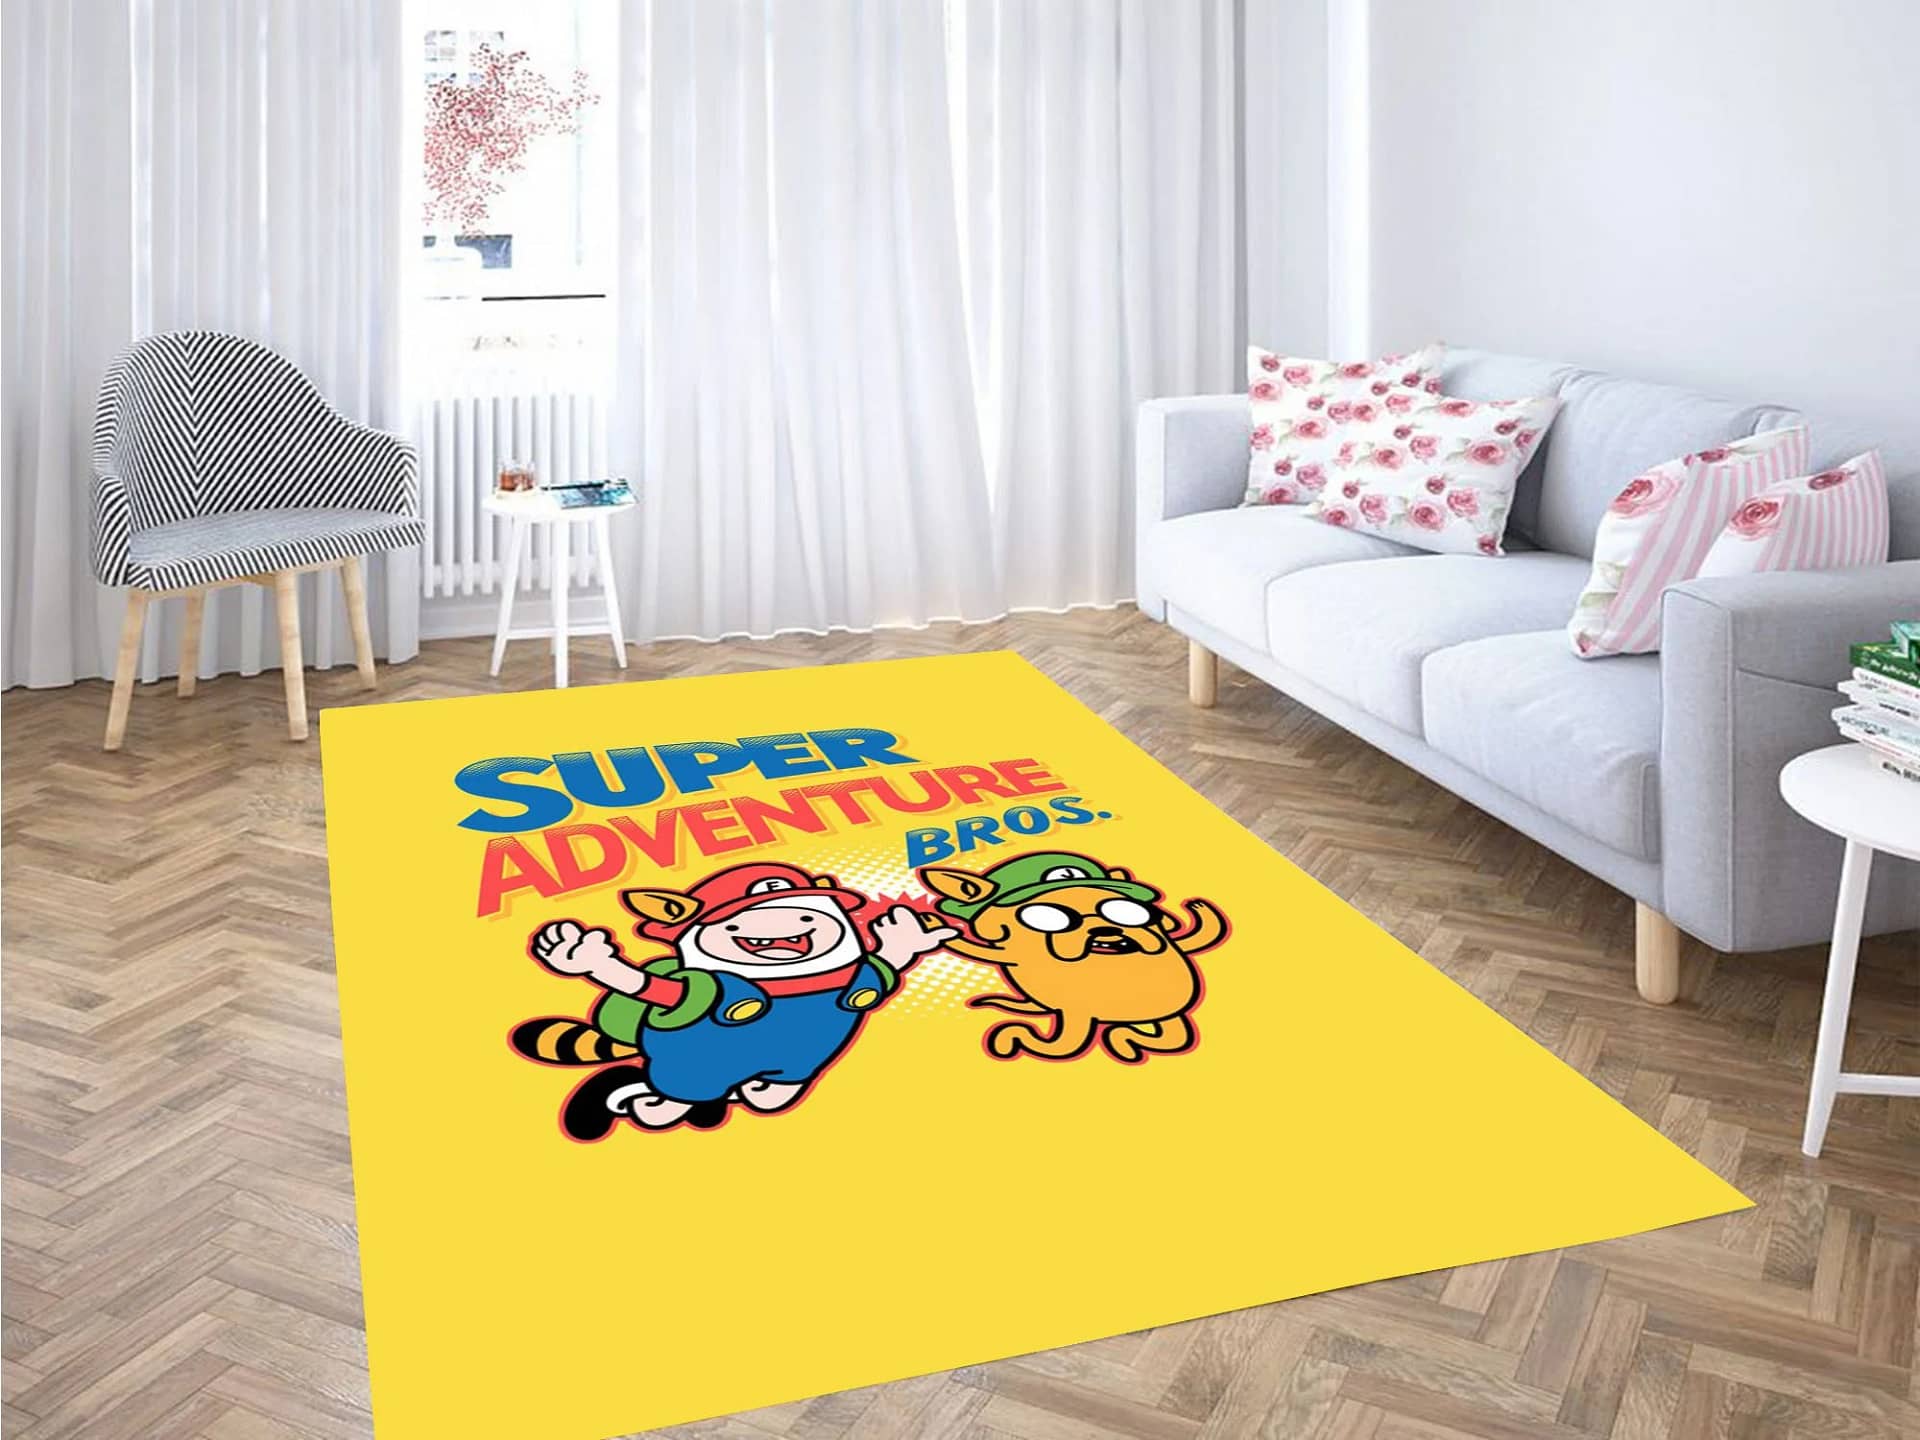 Super Adventure Bross Carpet Rug